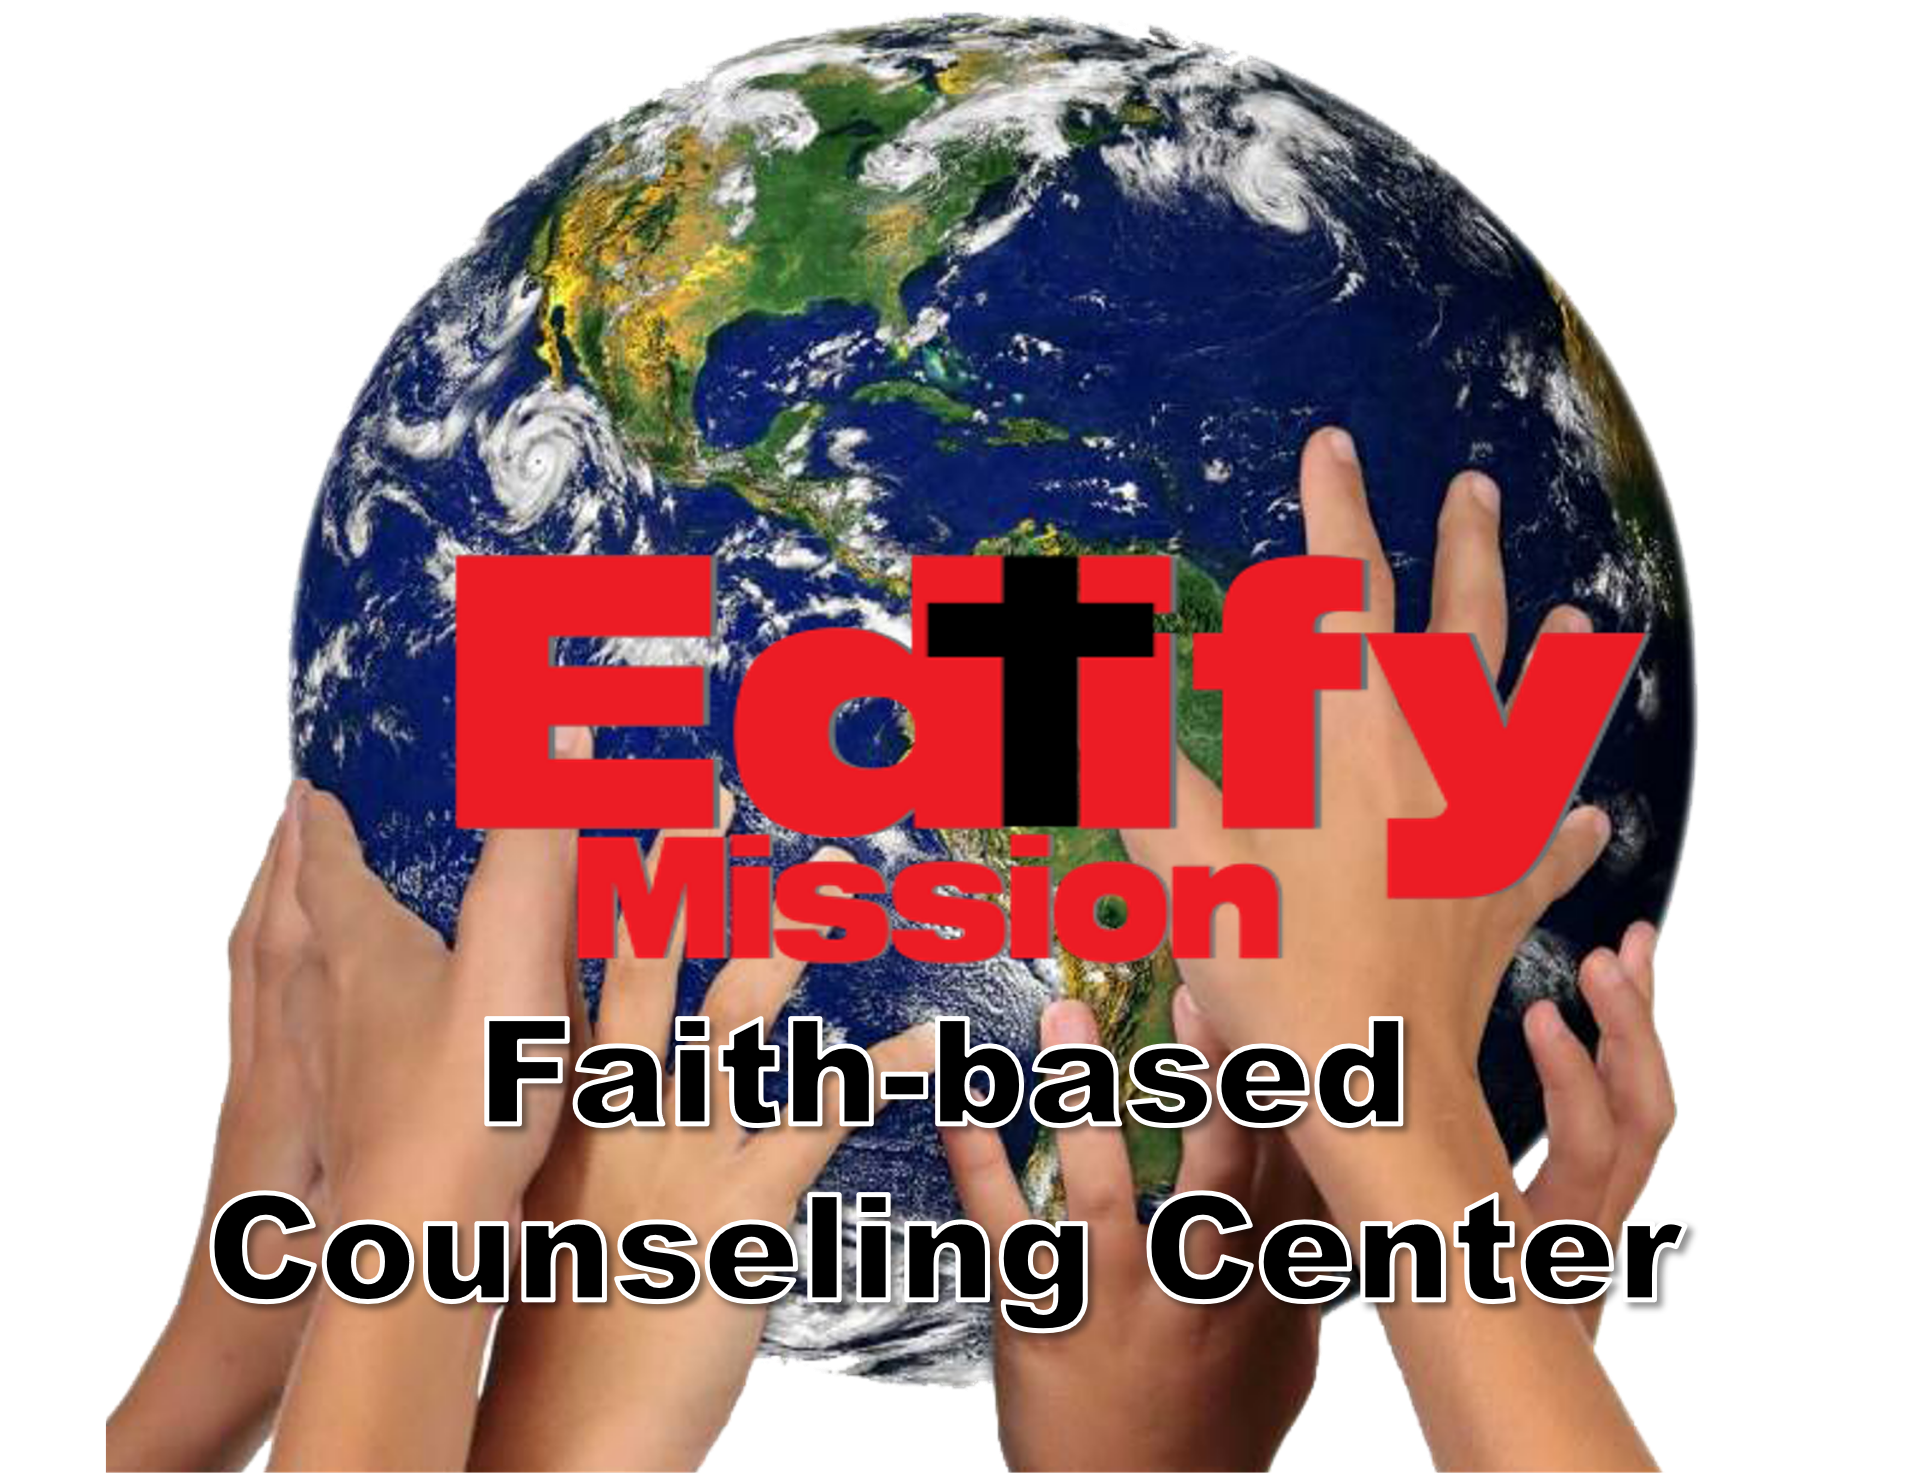 Dr Estacio Faith Based Counseling Center